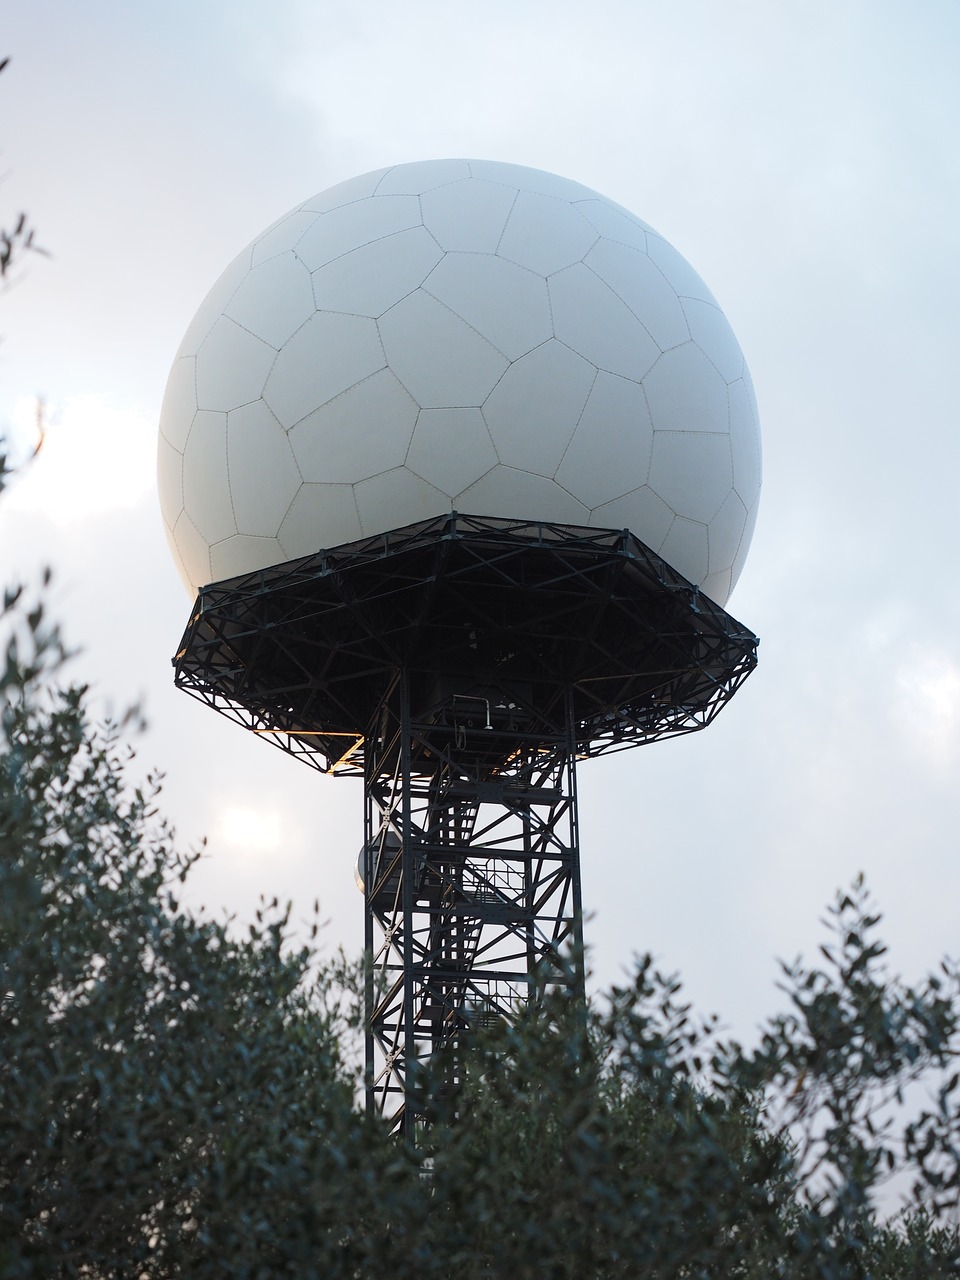 Radaro Įranga, Balionas, Balta, Rutulys, Siųstuvas, Transmisija, Komunikacija, Navigacija, Radaras, Signalas